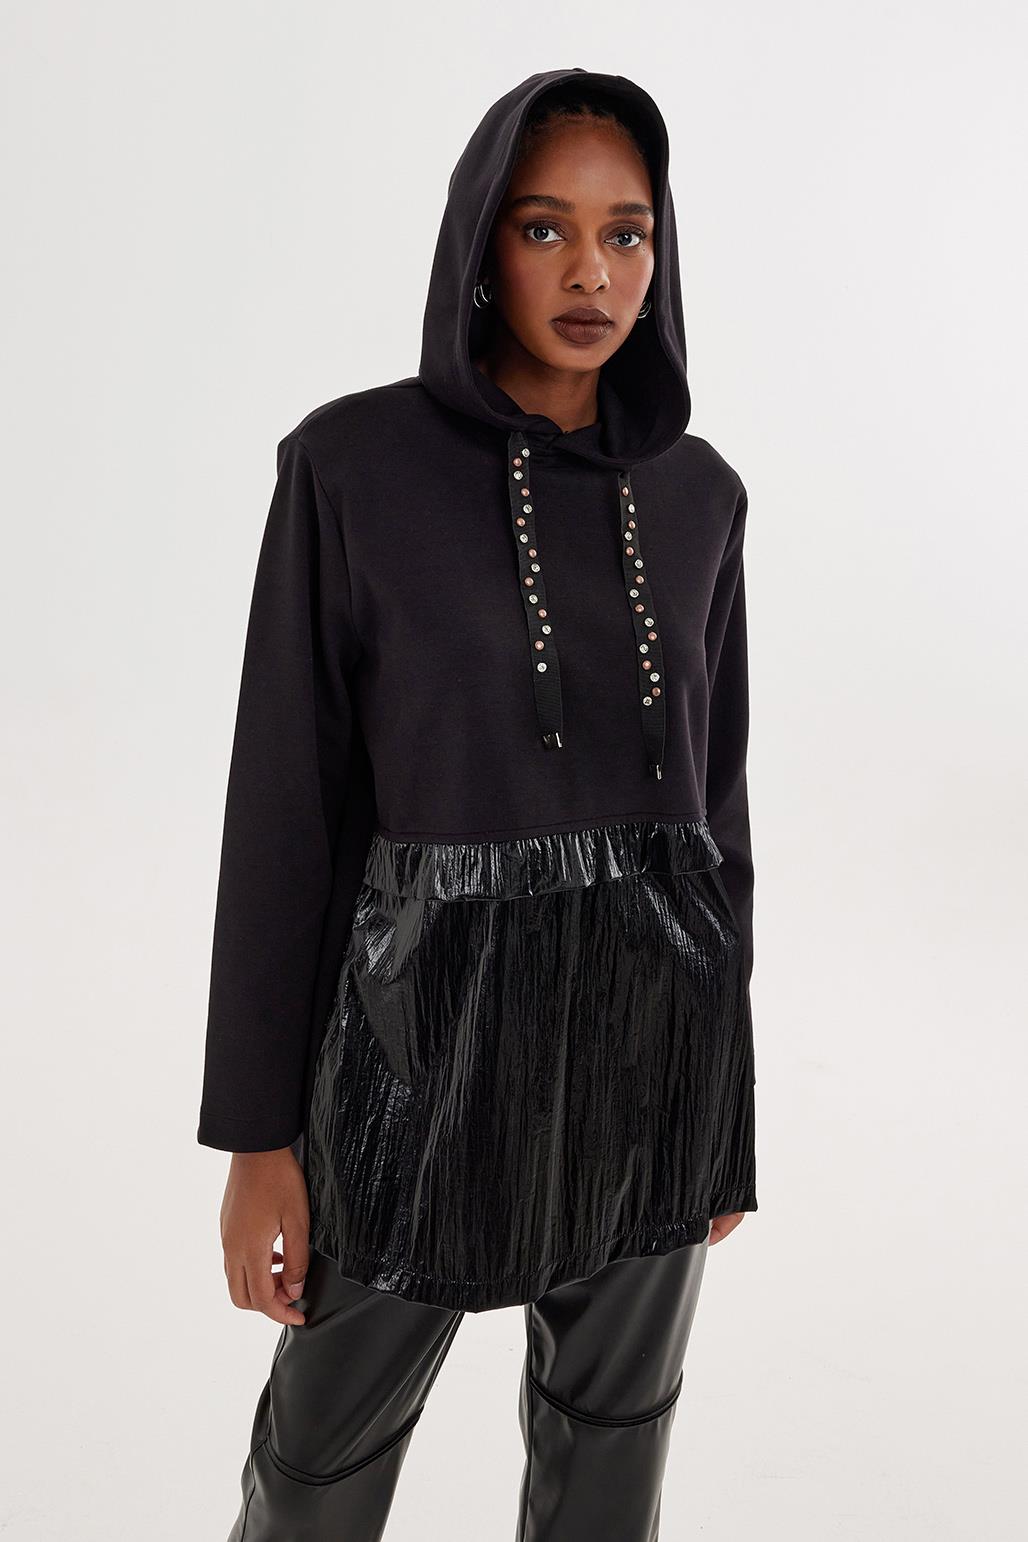 A wholesale clothing model wears Hooded Garnished Sweat - Black, Turkish wholesale Hoodie of Kadriye Baştürk